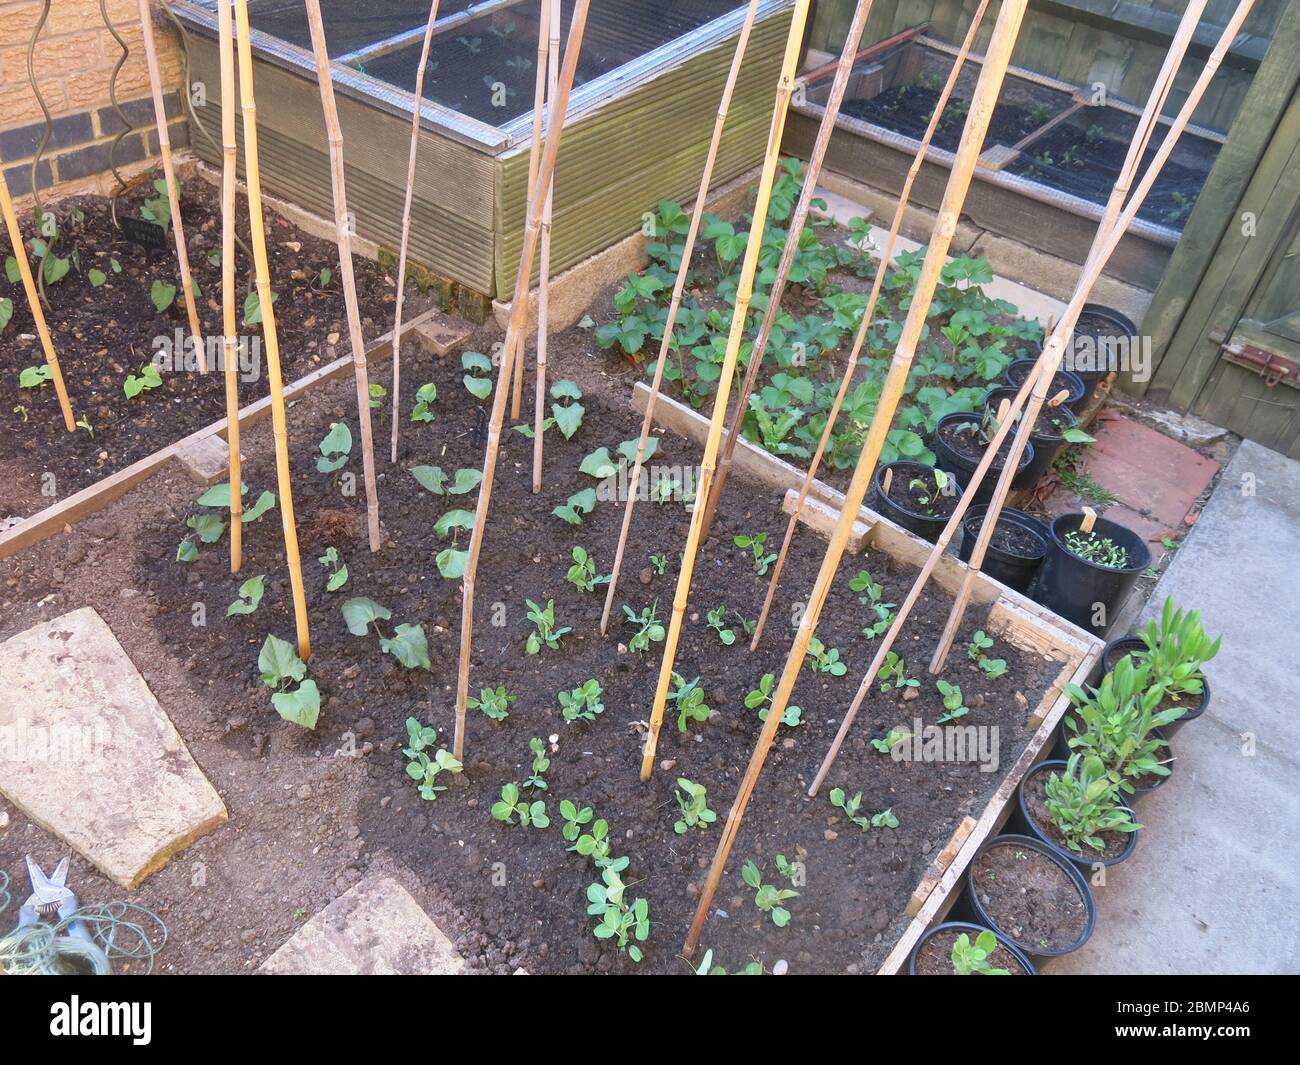 Ein kleines Gemüse Grundstück mit erhöhten Betten; junge Bohnenpflanzen und Mähne tout wurden mit Bambusstöcken gepflanzt, um Unterstützung zu bieten, wie die Pflanzen größer werden Stockfoto